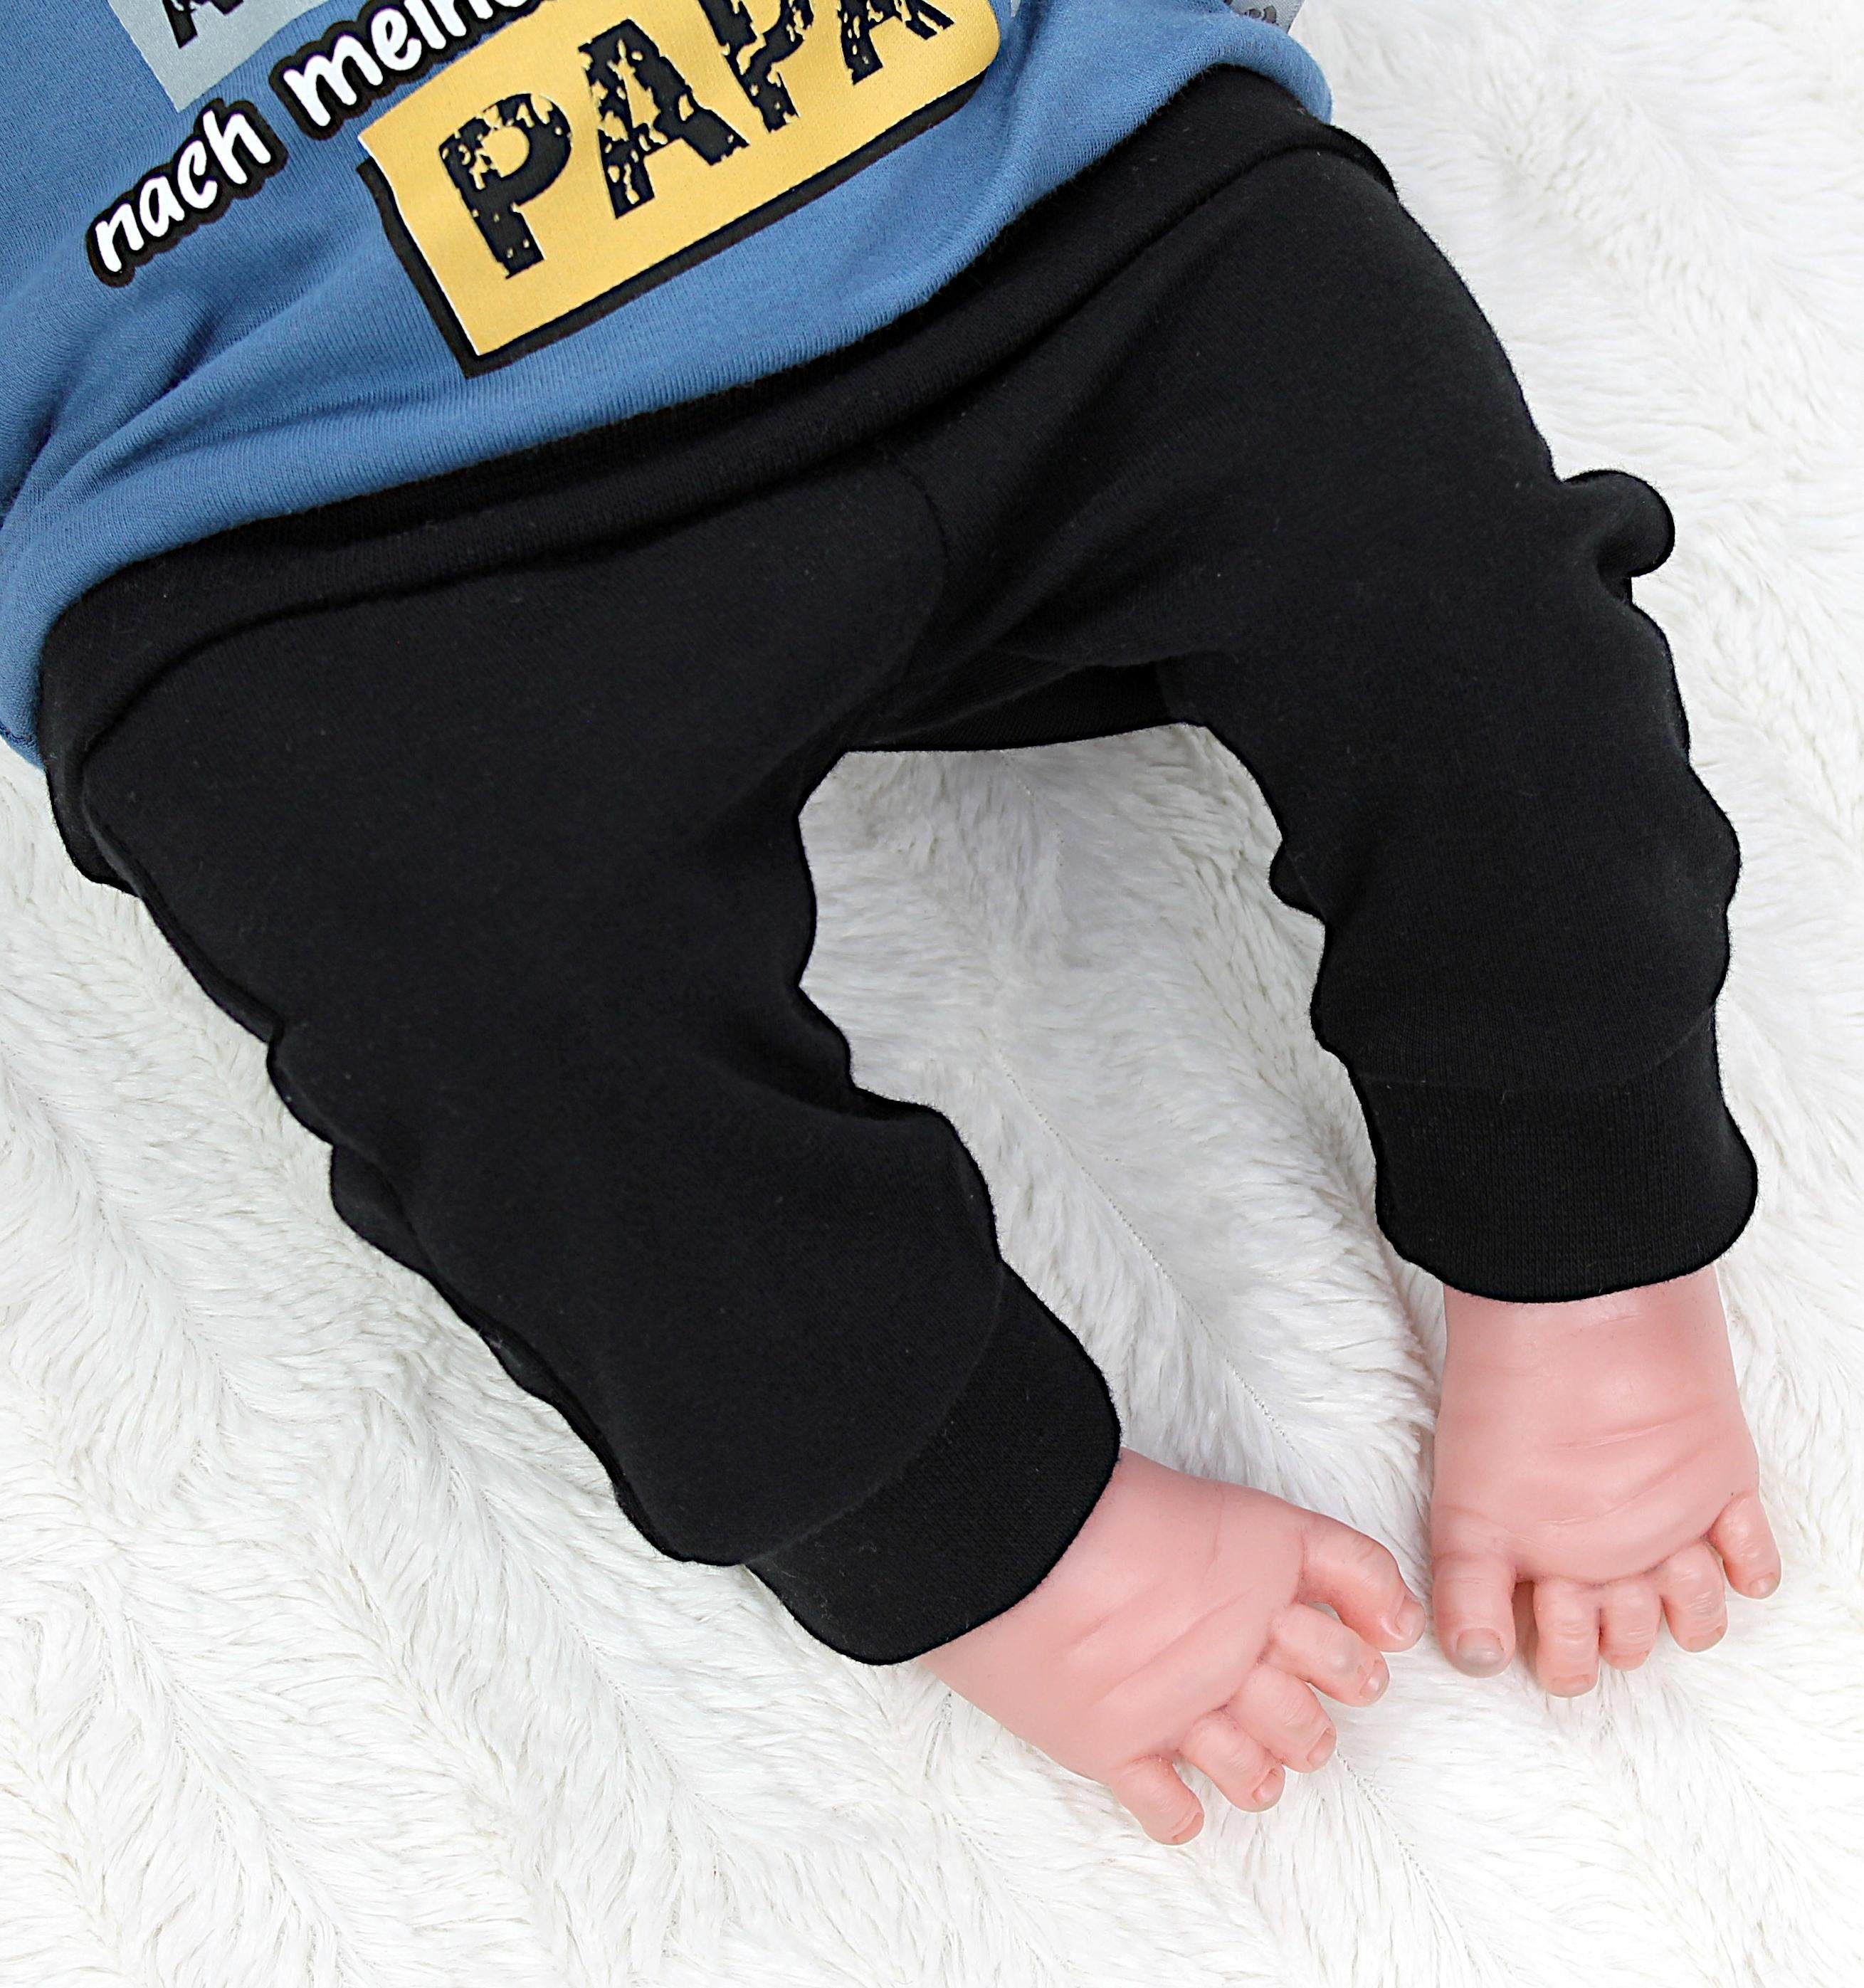 Erstausstattungspaket mit Baby Langarmshirt Jeansblau Ich versuche Print / Schwarz zu mich Spruch benehmen TupTam Babykleidung Jungen Outfit Babyhose